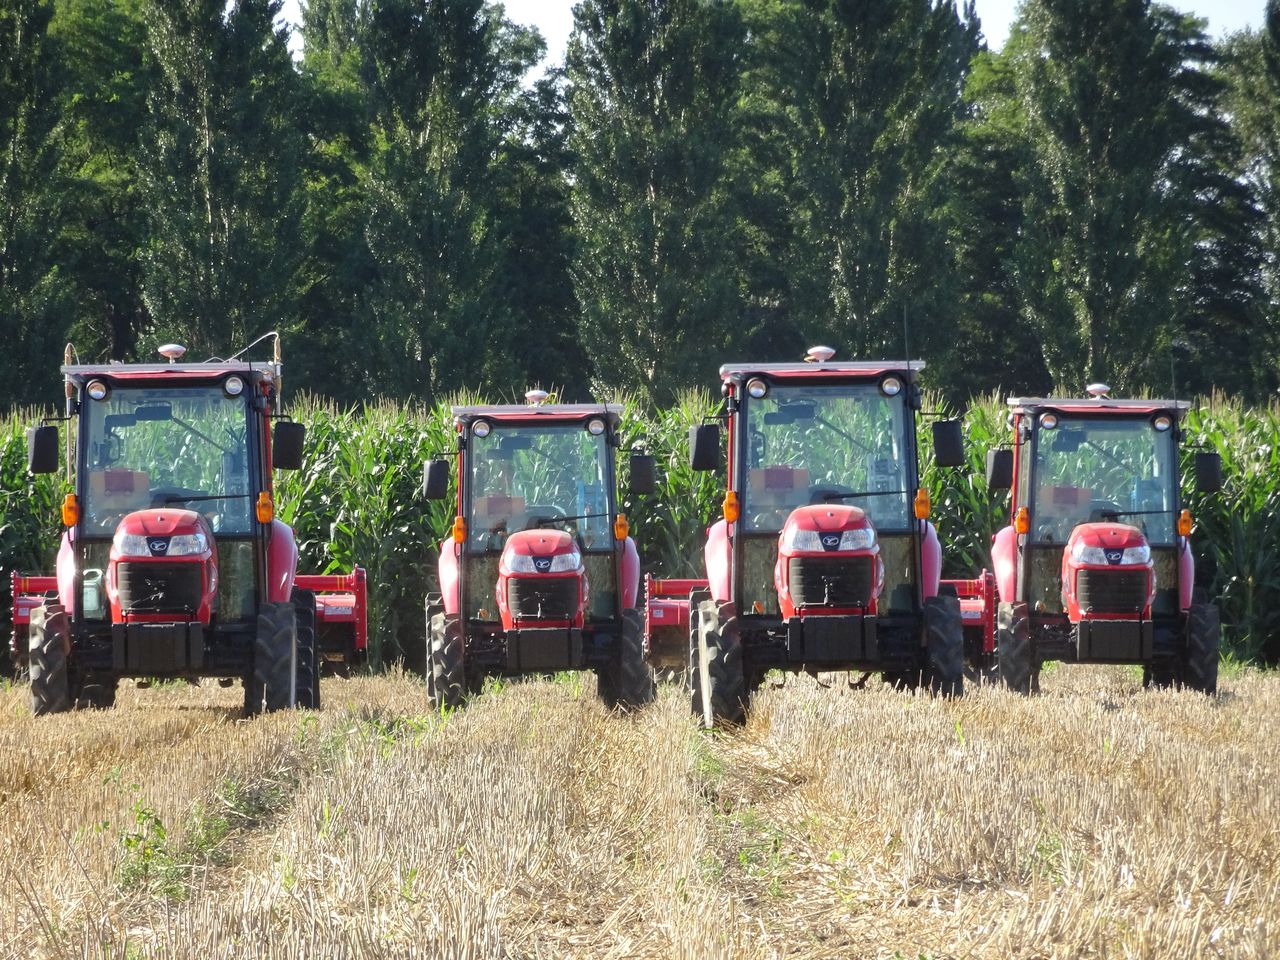 Автономные тракторы готовы приступить к совместной обработке поля (© Ногути Нобору)